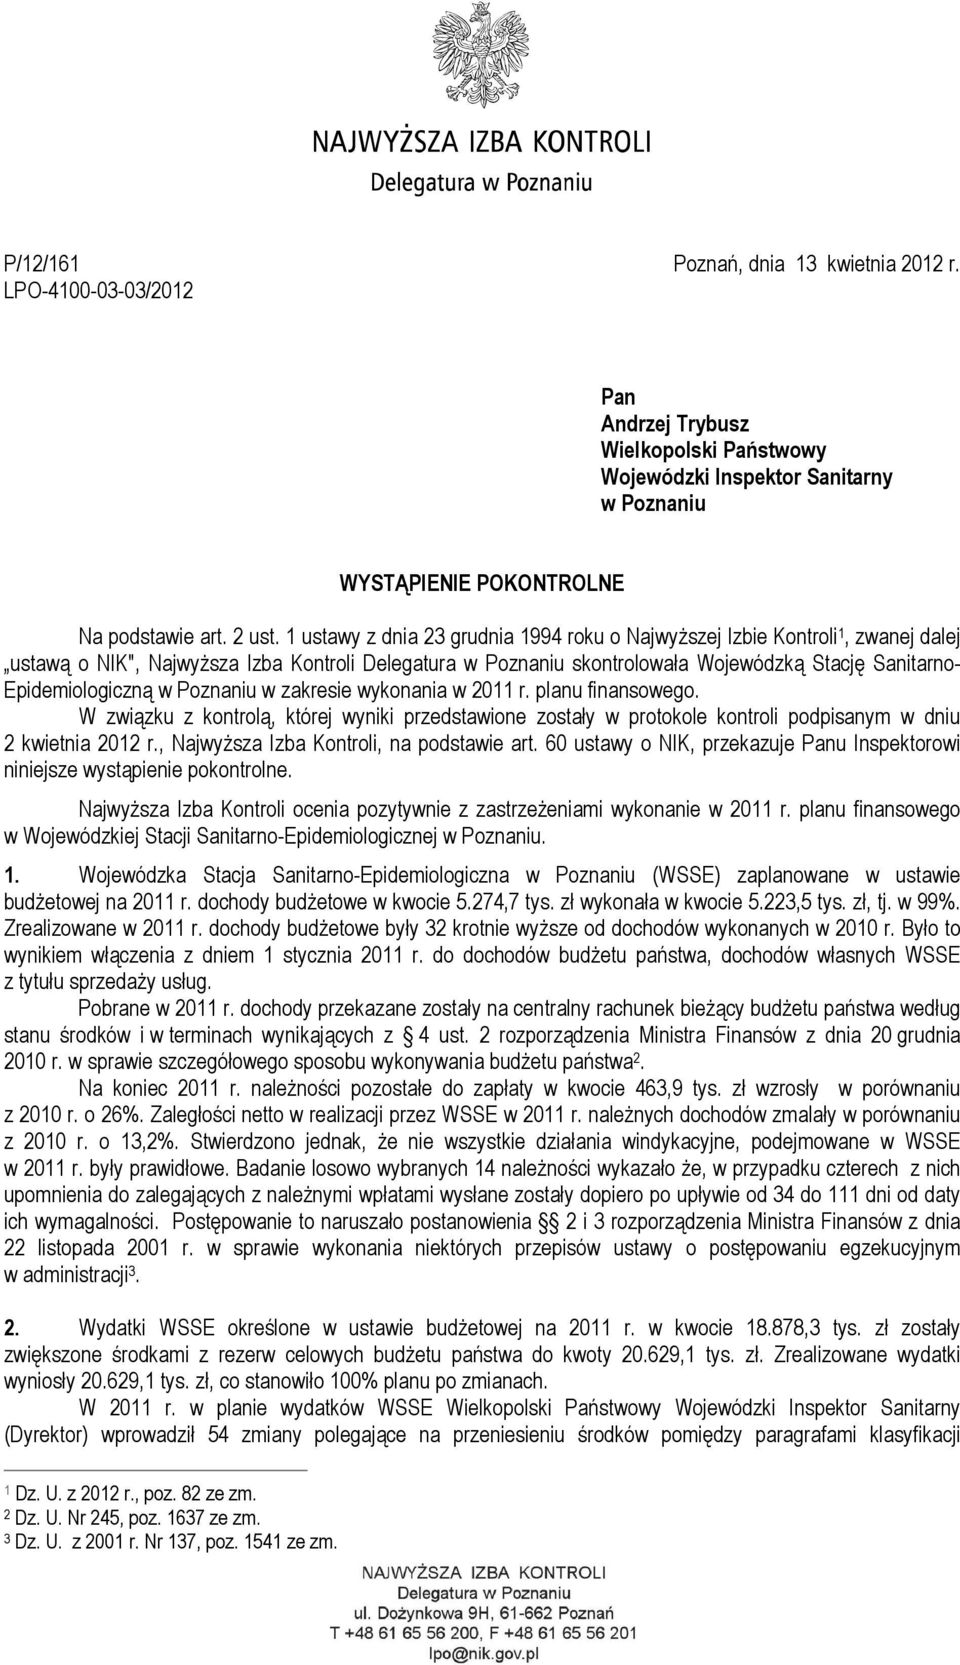 Epidemiologiczną w Poznaniu w zakresie wykonania w 2011 r. planu finansowego. W związku z kontrolą, której wyniki przedstawione zostały w protokole kontroli podpisanym w dniu 2 kwietnia 2012 r.